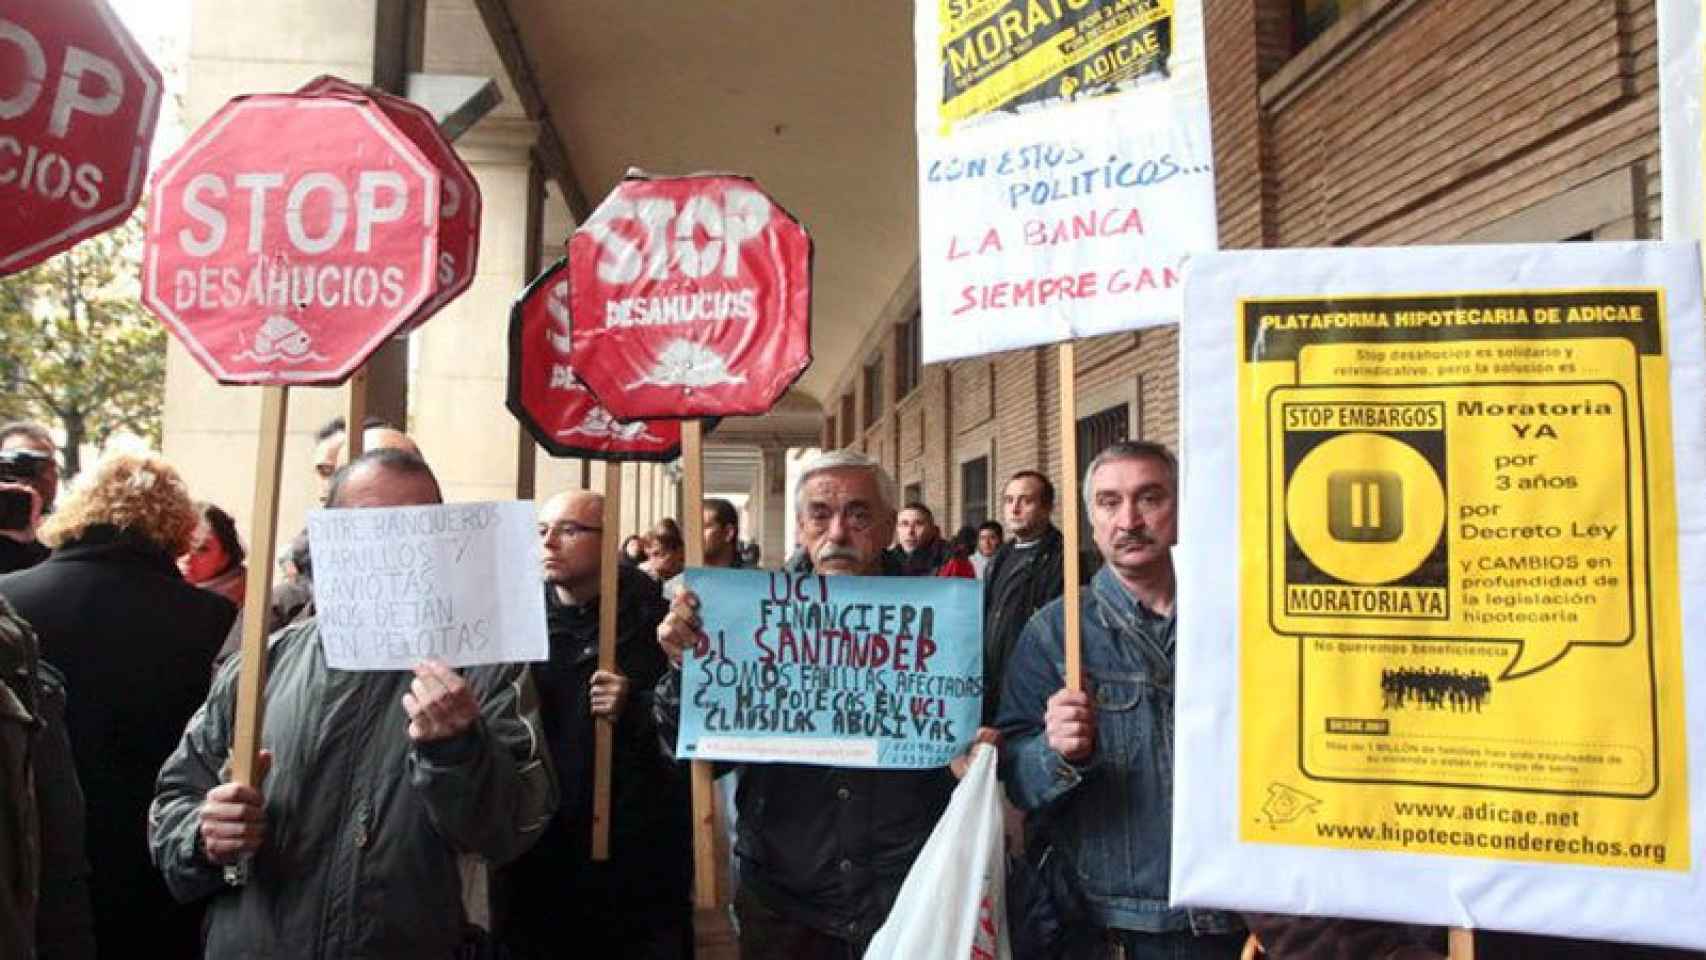 Imagen de una manifestación contra un desahucio en Zaragoza.